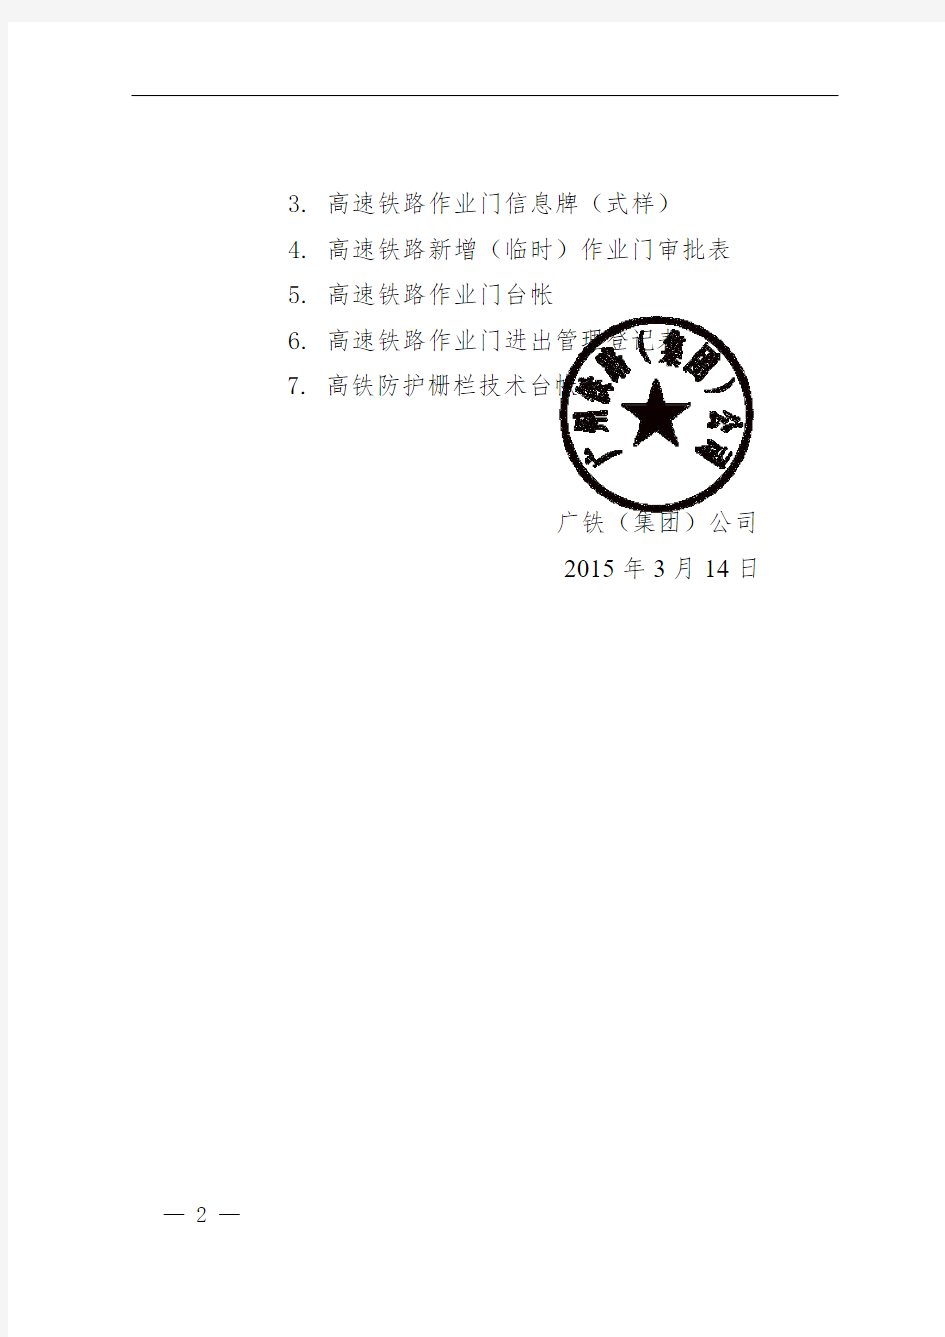 (广铁工发〔2015〕76号)广铁(集团)公司关于发布《广铁集团高速铁路防护栅栏管理办法》的通知